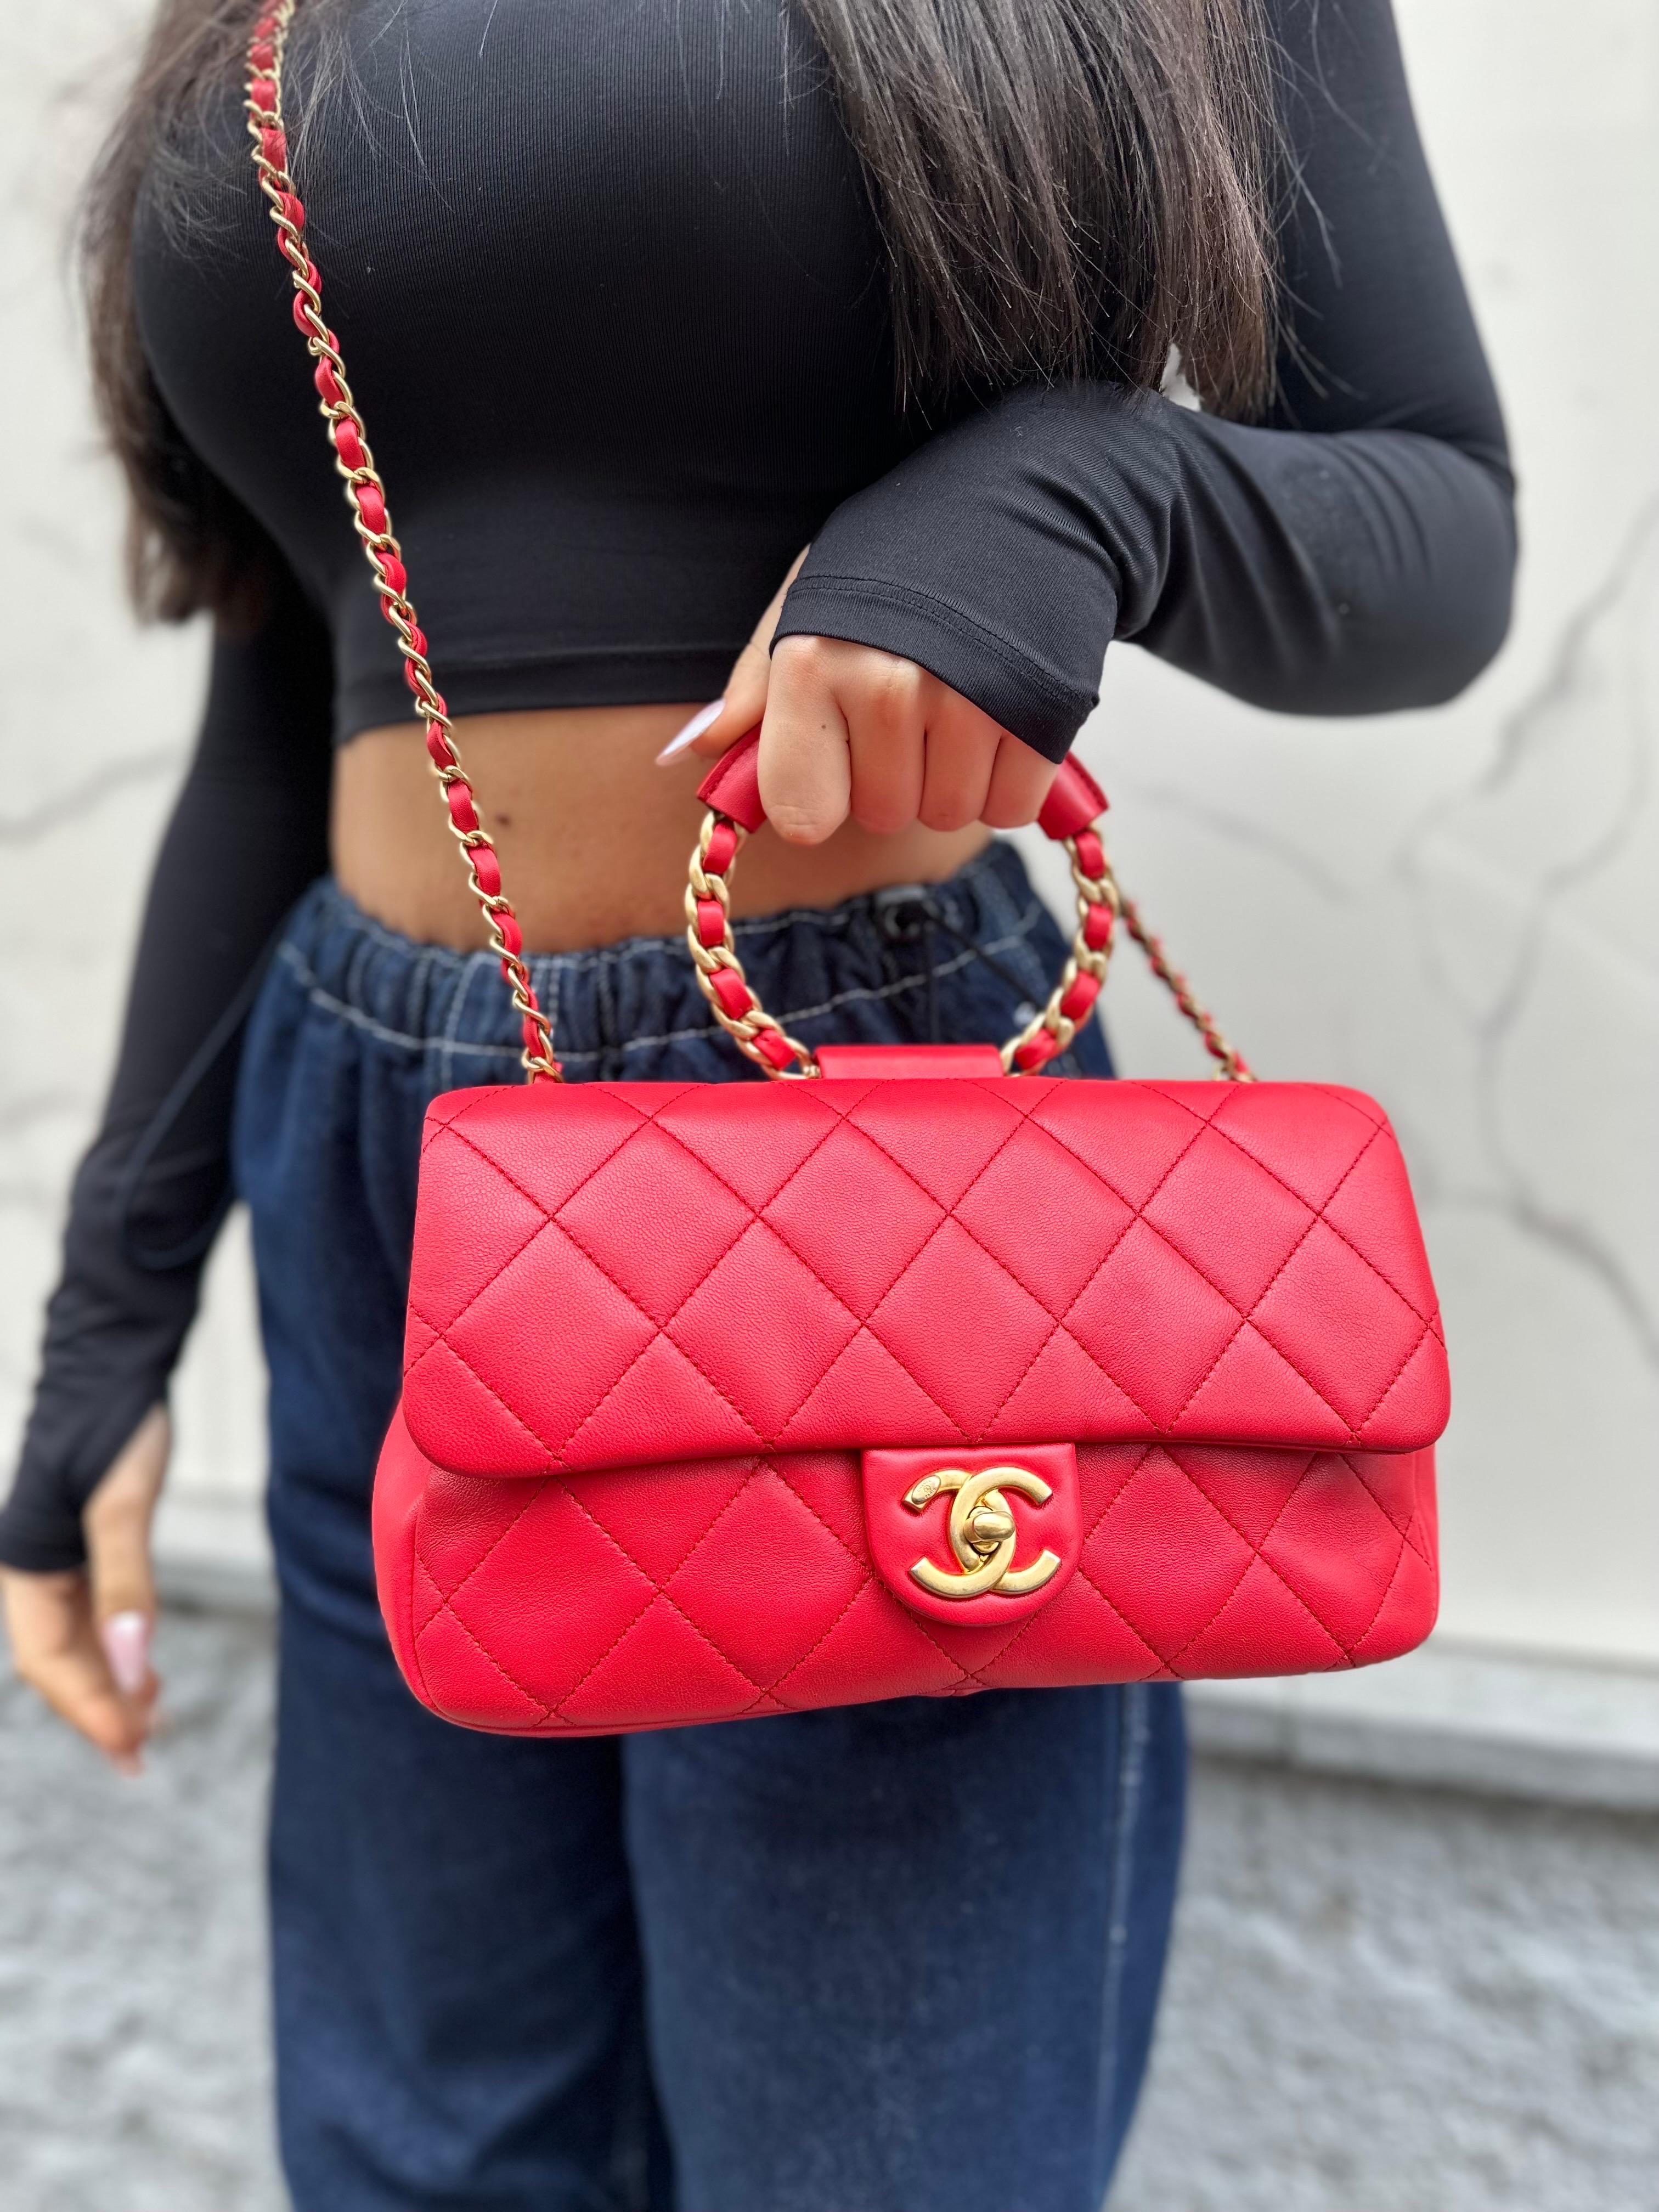 Borsa firmata Chanel, modello Circle Handle, realizzata in pelle liscia rossa con hardware dorati. Dotata di una patta frontale con chiusura a girello con logo 